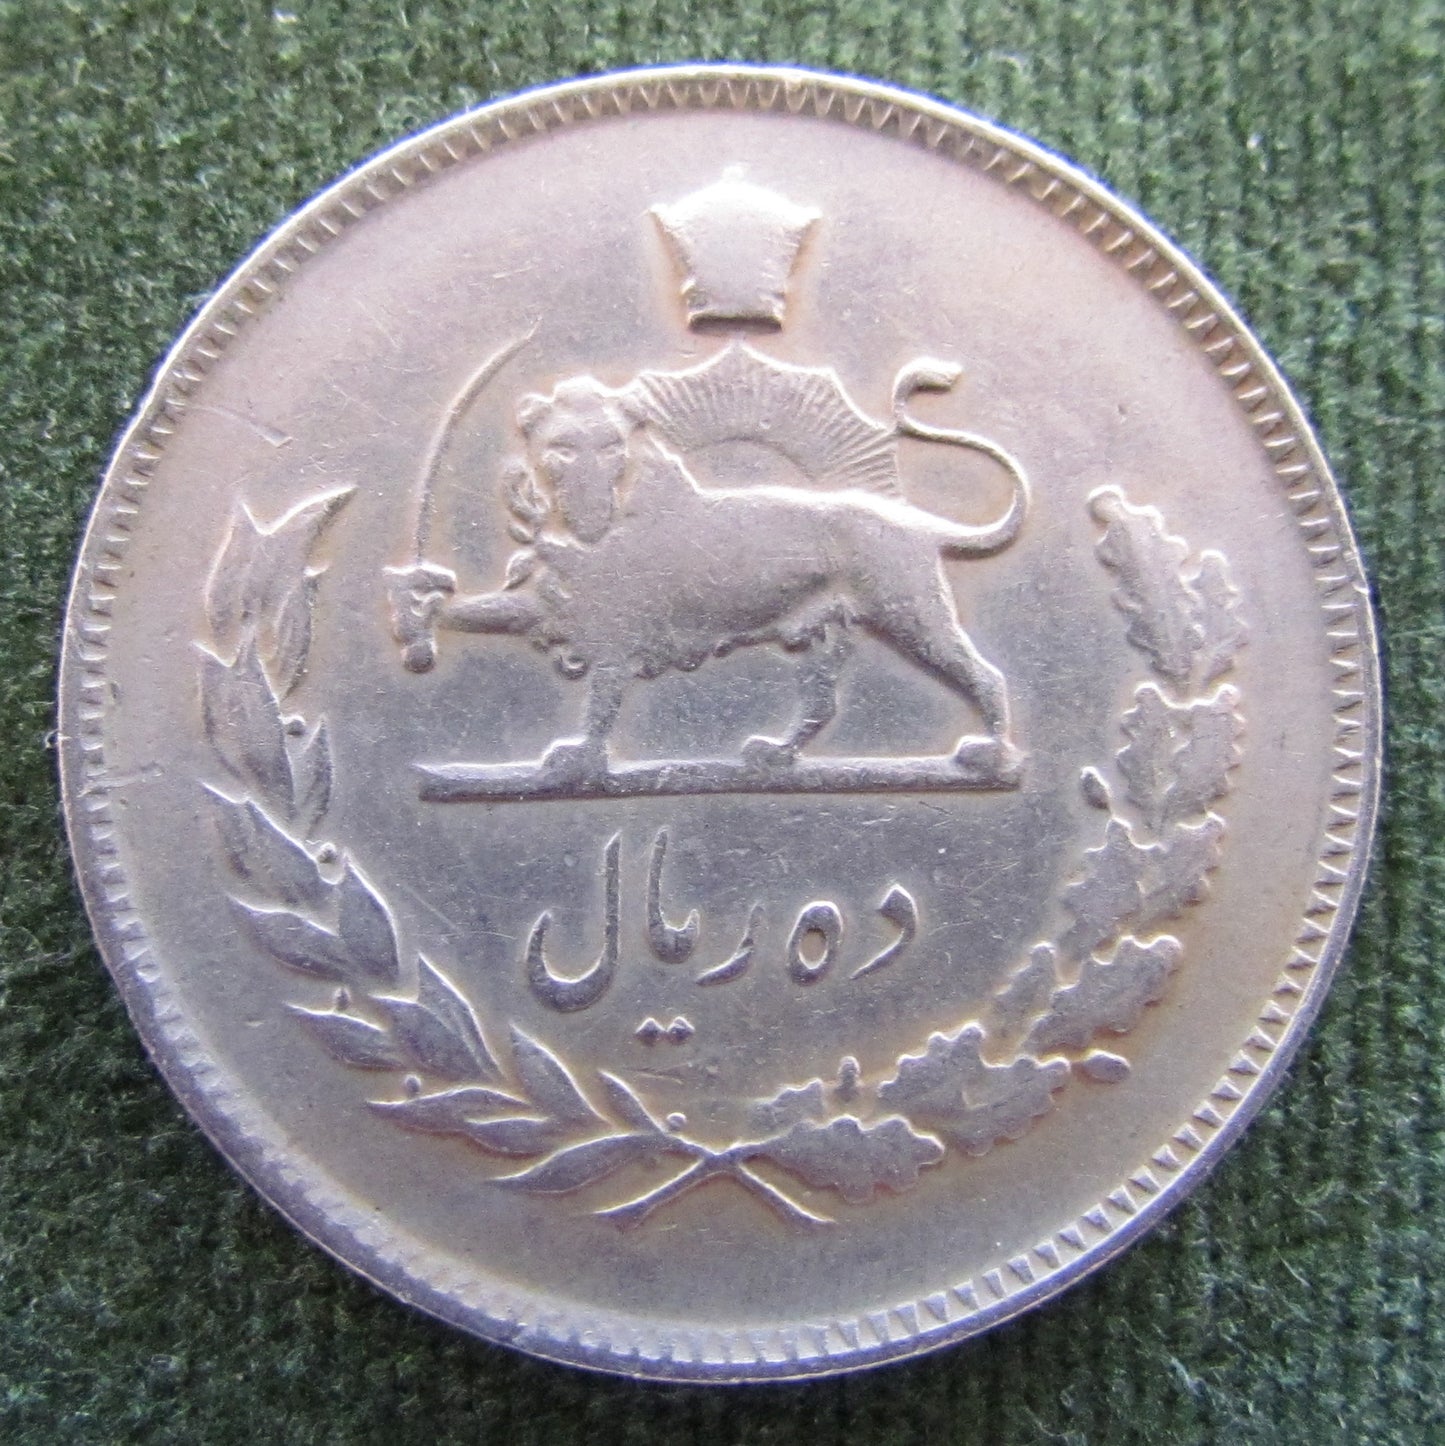 Iran 1970 10 Rials Sha Mohammad Reza Pahlavi Coin AH 1349 - Circulated